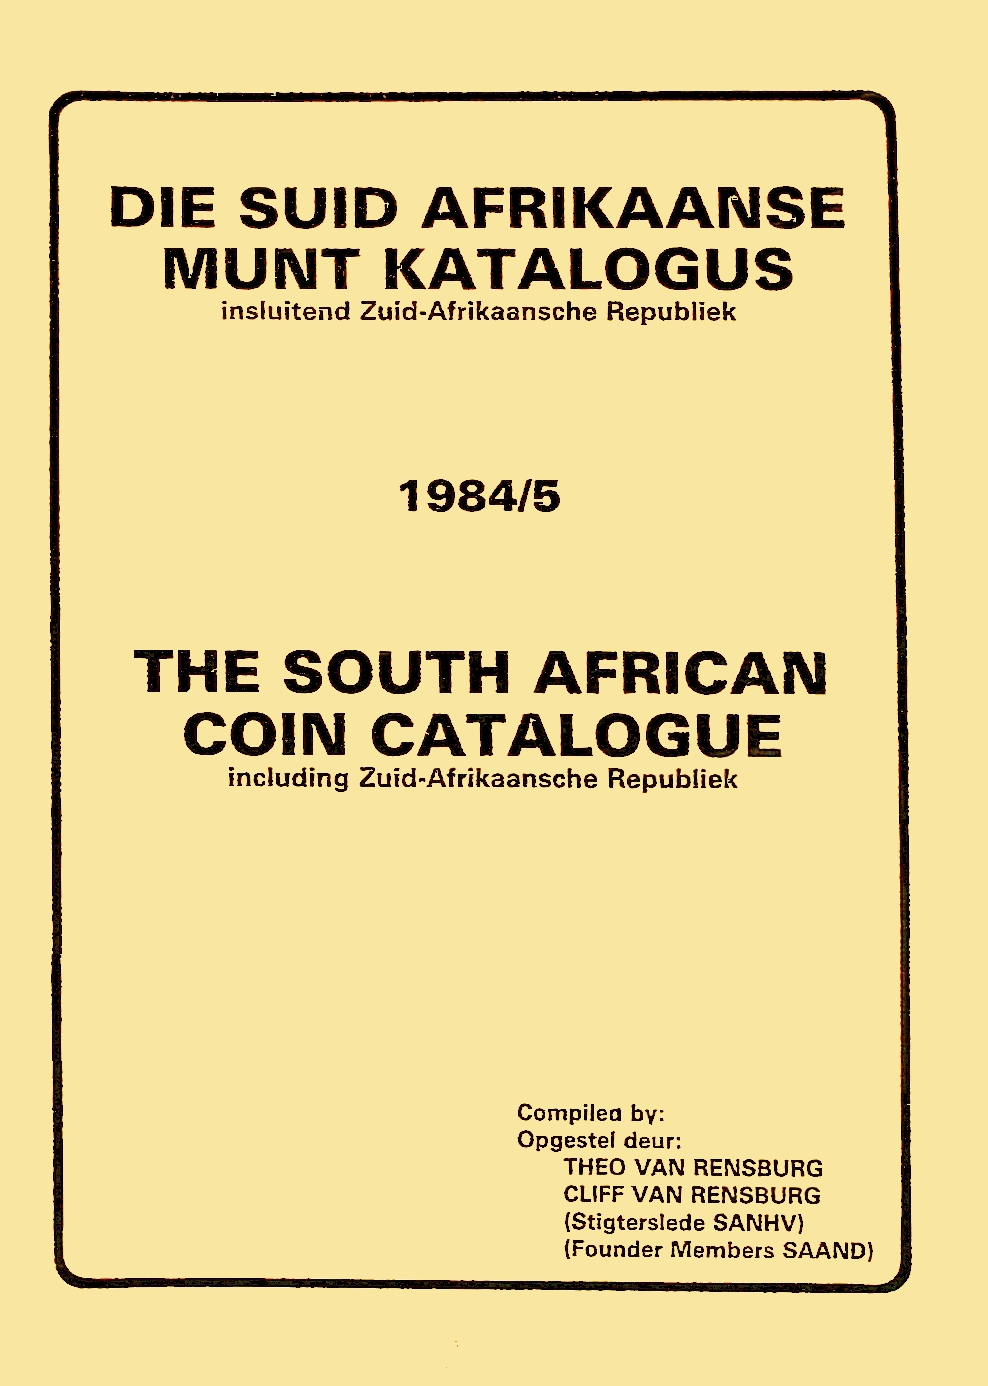 Randburg Coin Catalogue 1984 to 1985